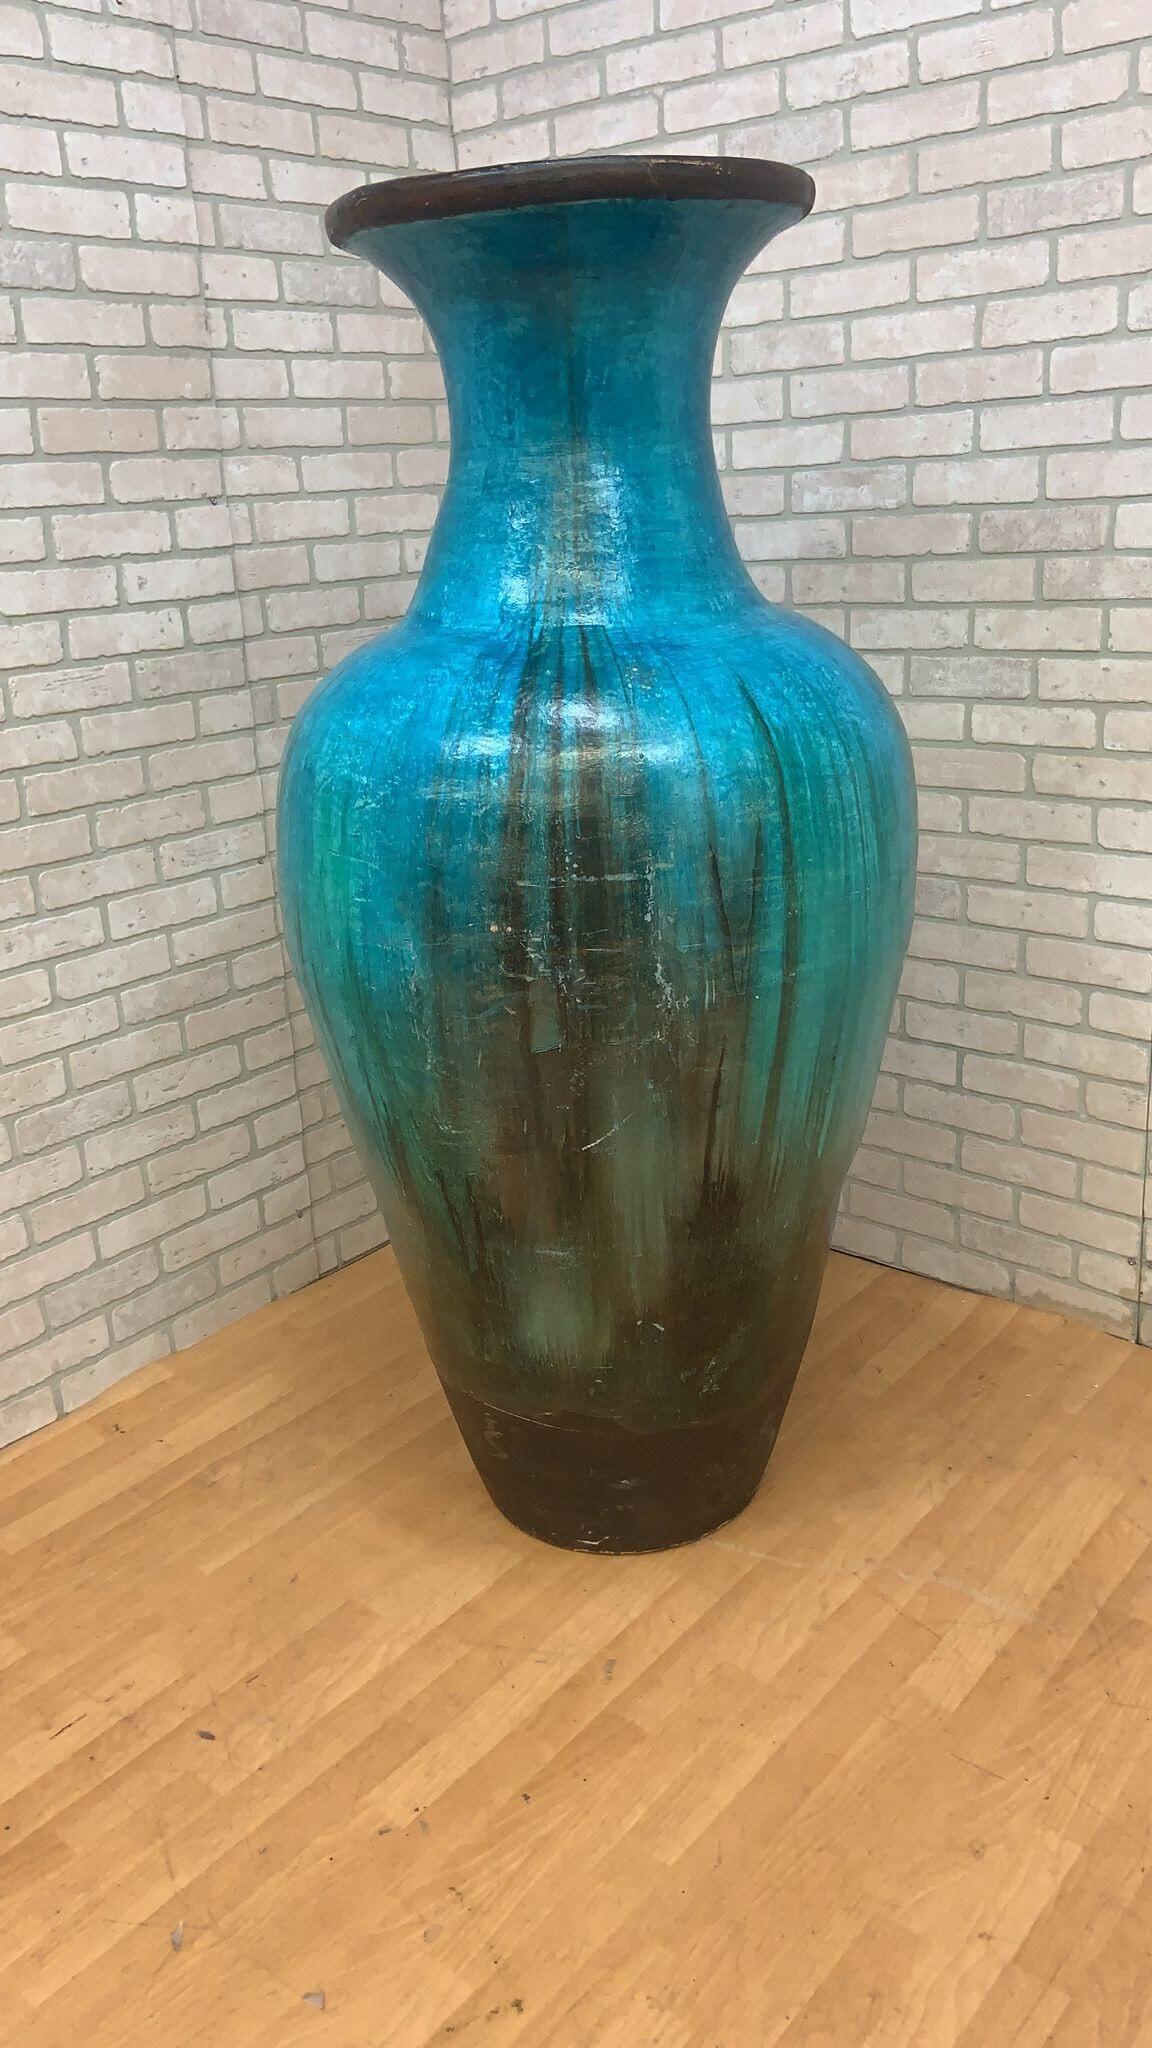 Vintage Teal Boden Vase

Setzen Sie mit der Teal Large Floor Vase einen farbigen Akzent im Vintage-Look.

CIRCA 1970

Abmessungen:
H: 62